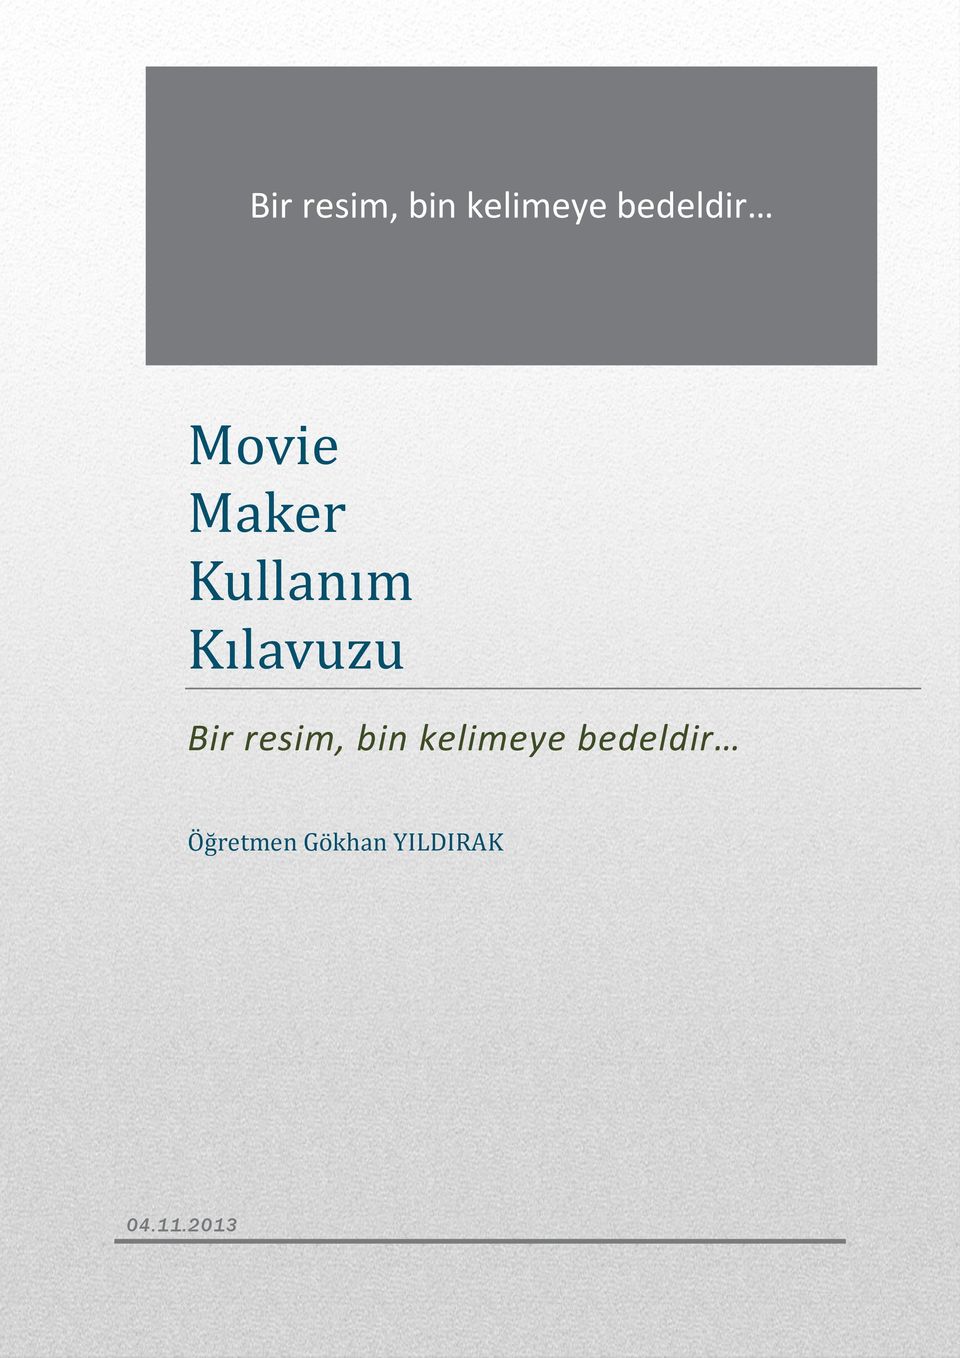 Öğretmen Gökhan YILDIRAK 04.11.